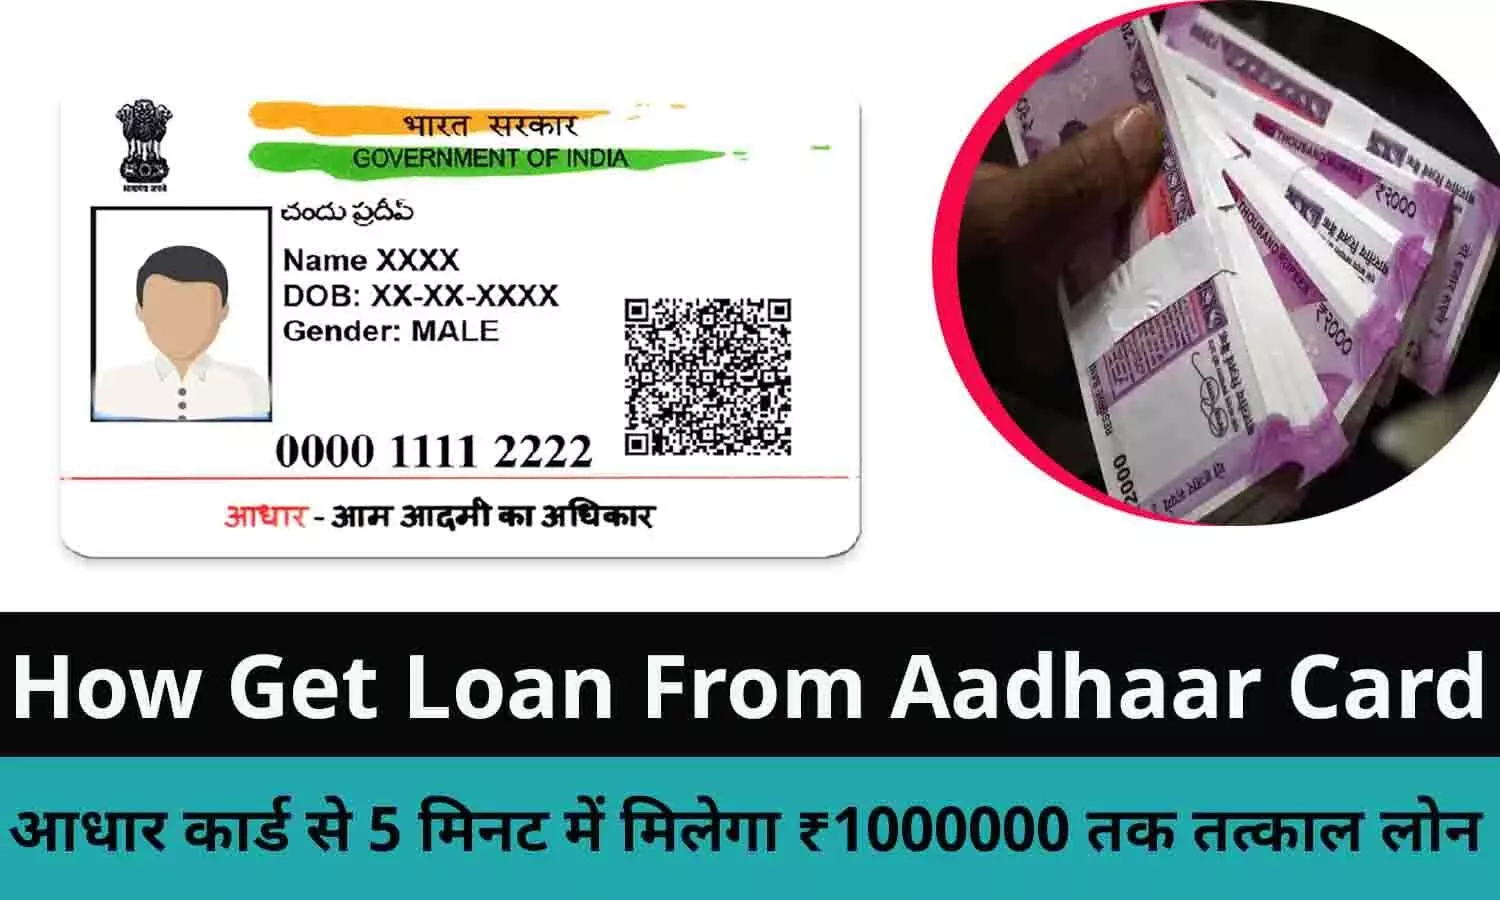 Aadhaar Card Se Online Loan Kaise Le 2022: आधार कार्ड से 5 मिनट में मिलेगा ₹1000000 तक तत्काल लोन, Online जाकर करे अप्लाई